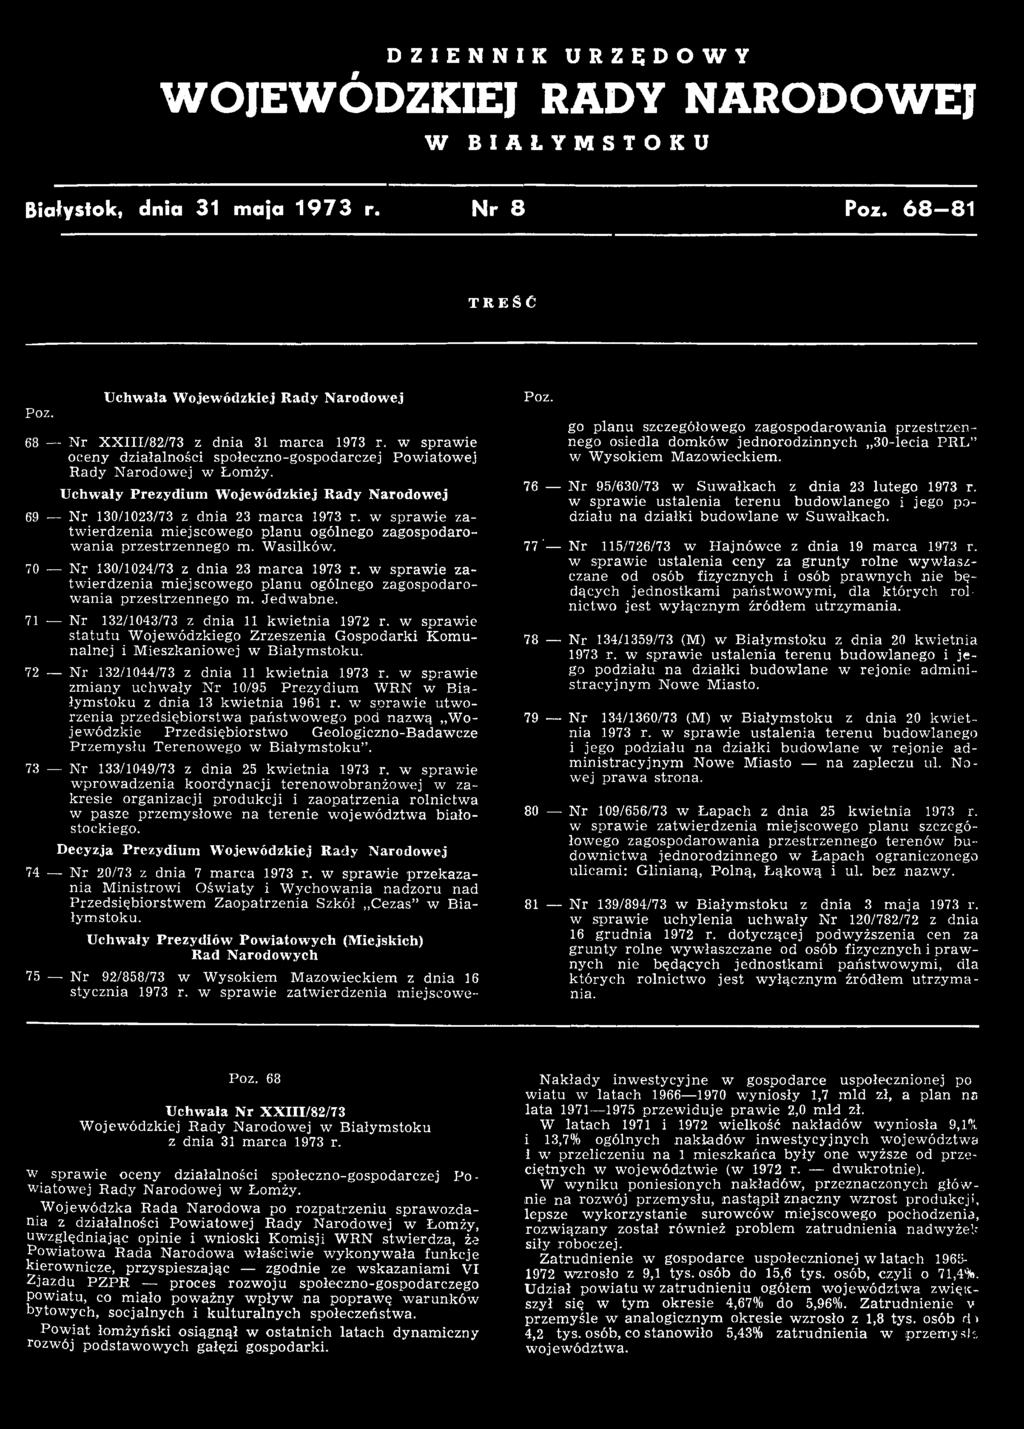 w sprawie statutu Wojewódzkiego Zrzeszenia Gospodarki Komunalnej i Mieszkaniowej w Białymstoku. 72 Nr 132/1044/73 z dnia 11 kwietnia 1973 r.